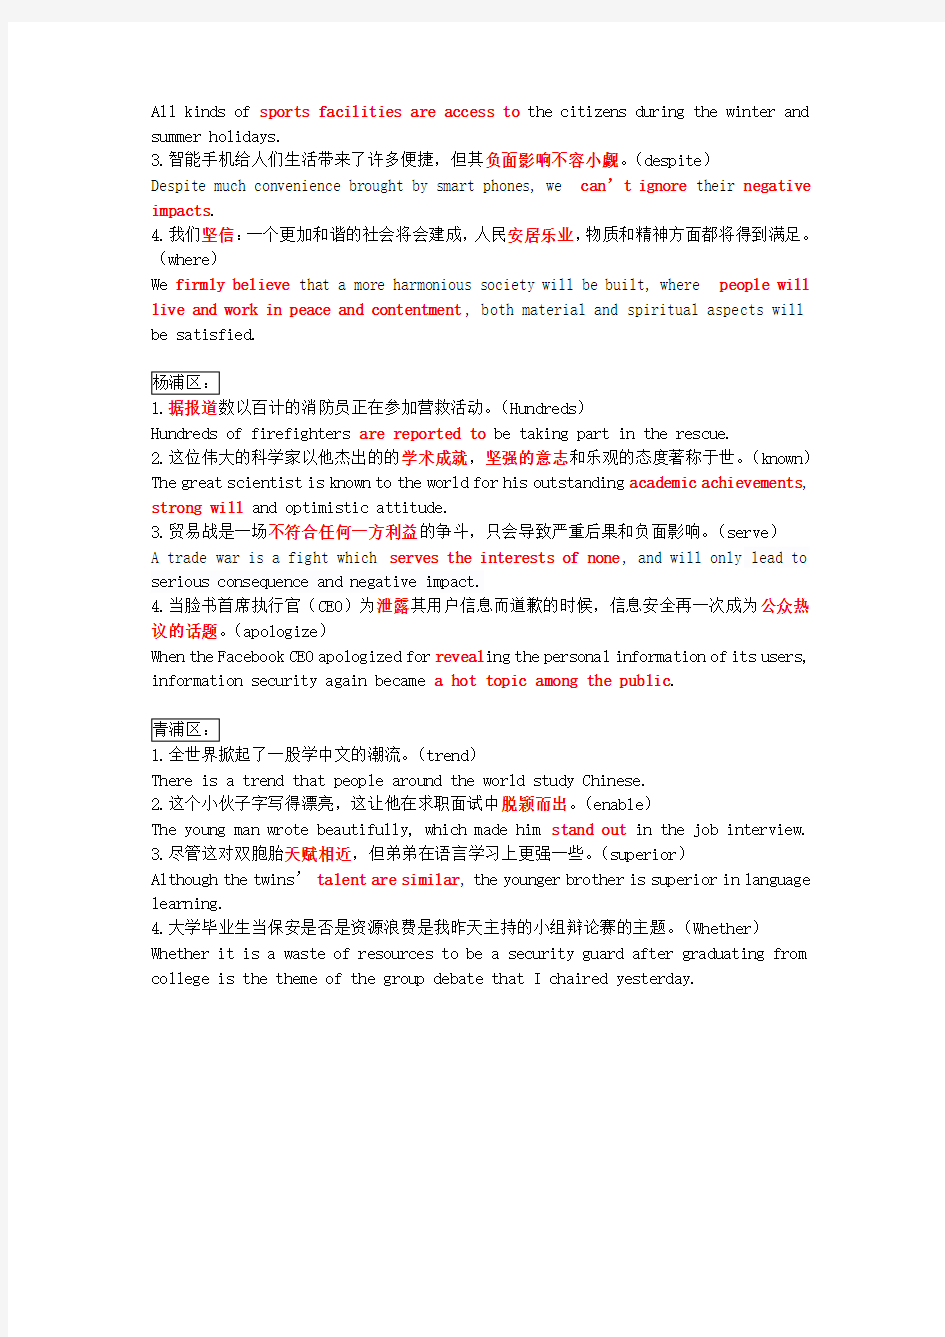 上海高考英语二模-翻译部分